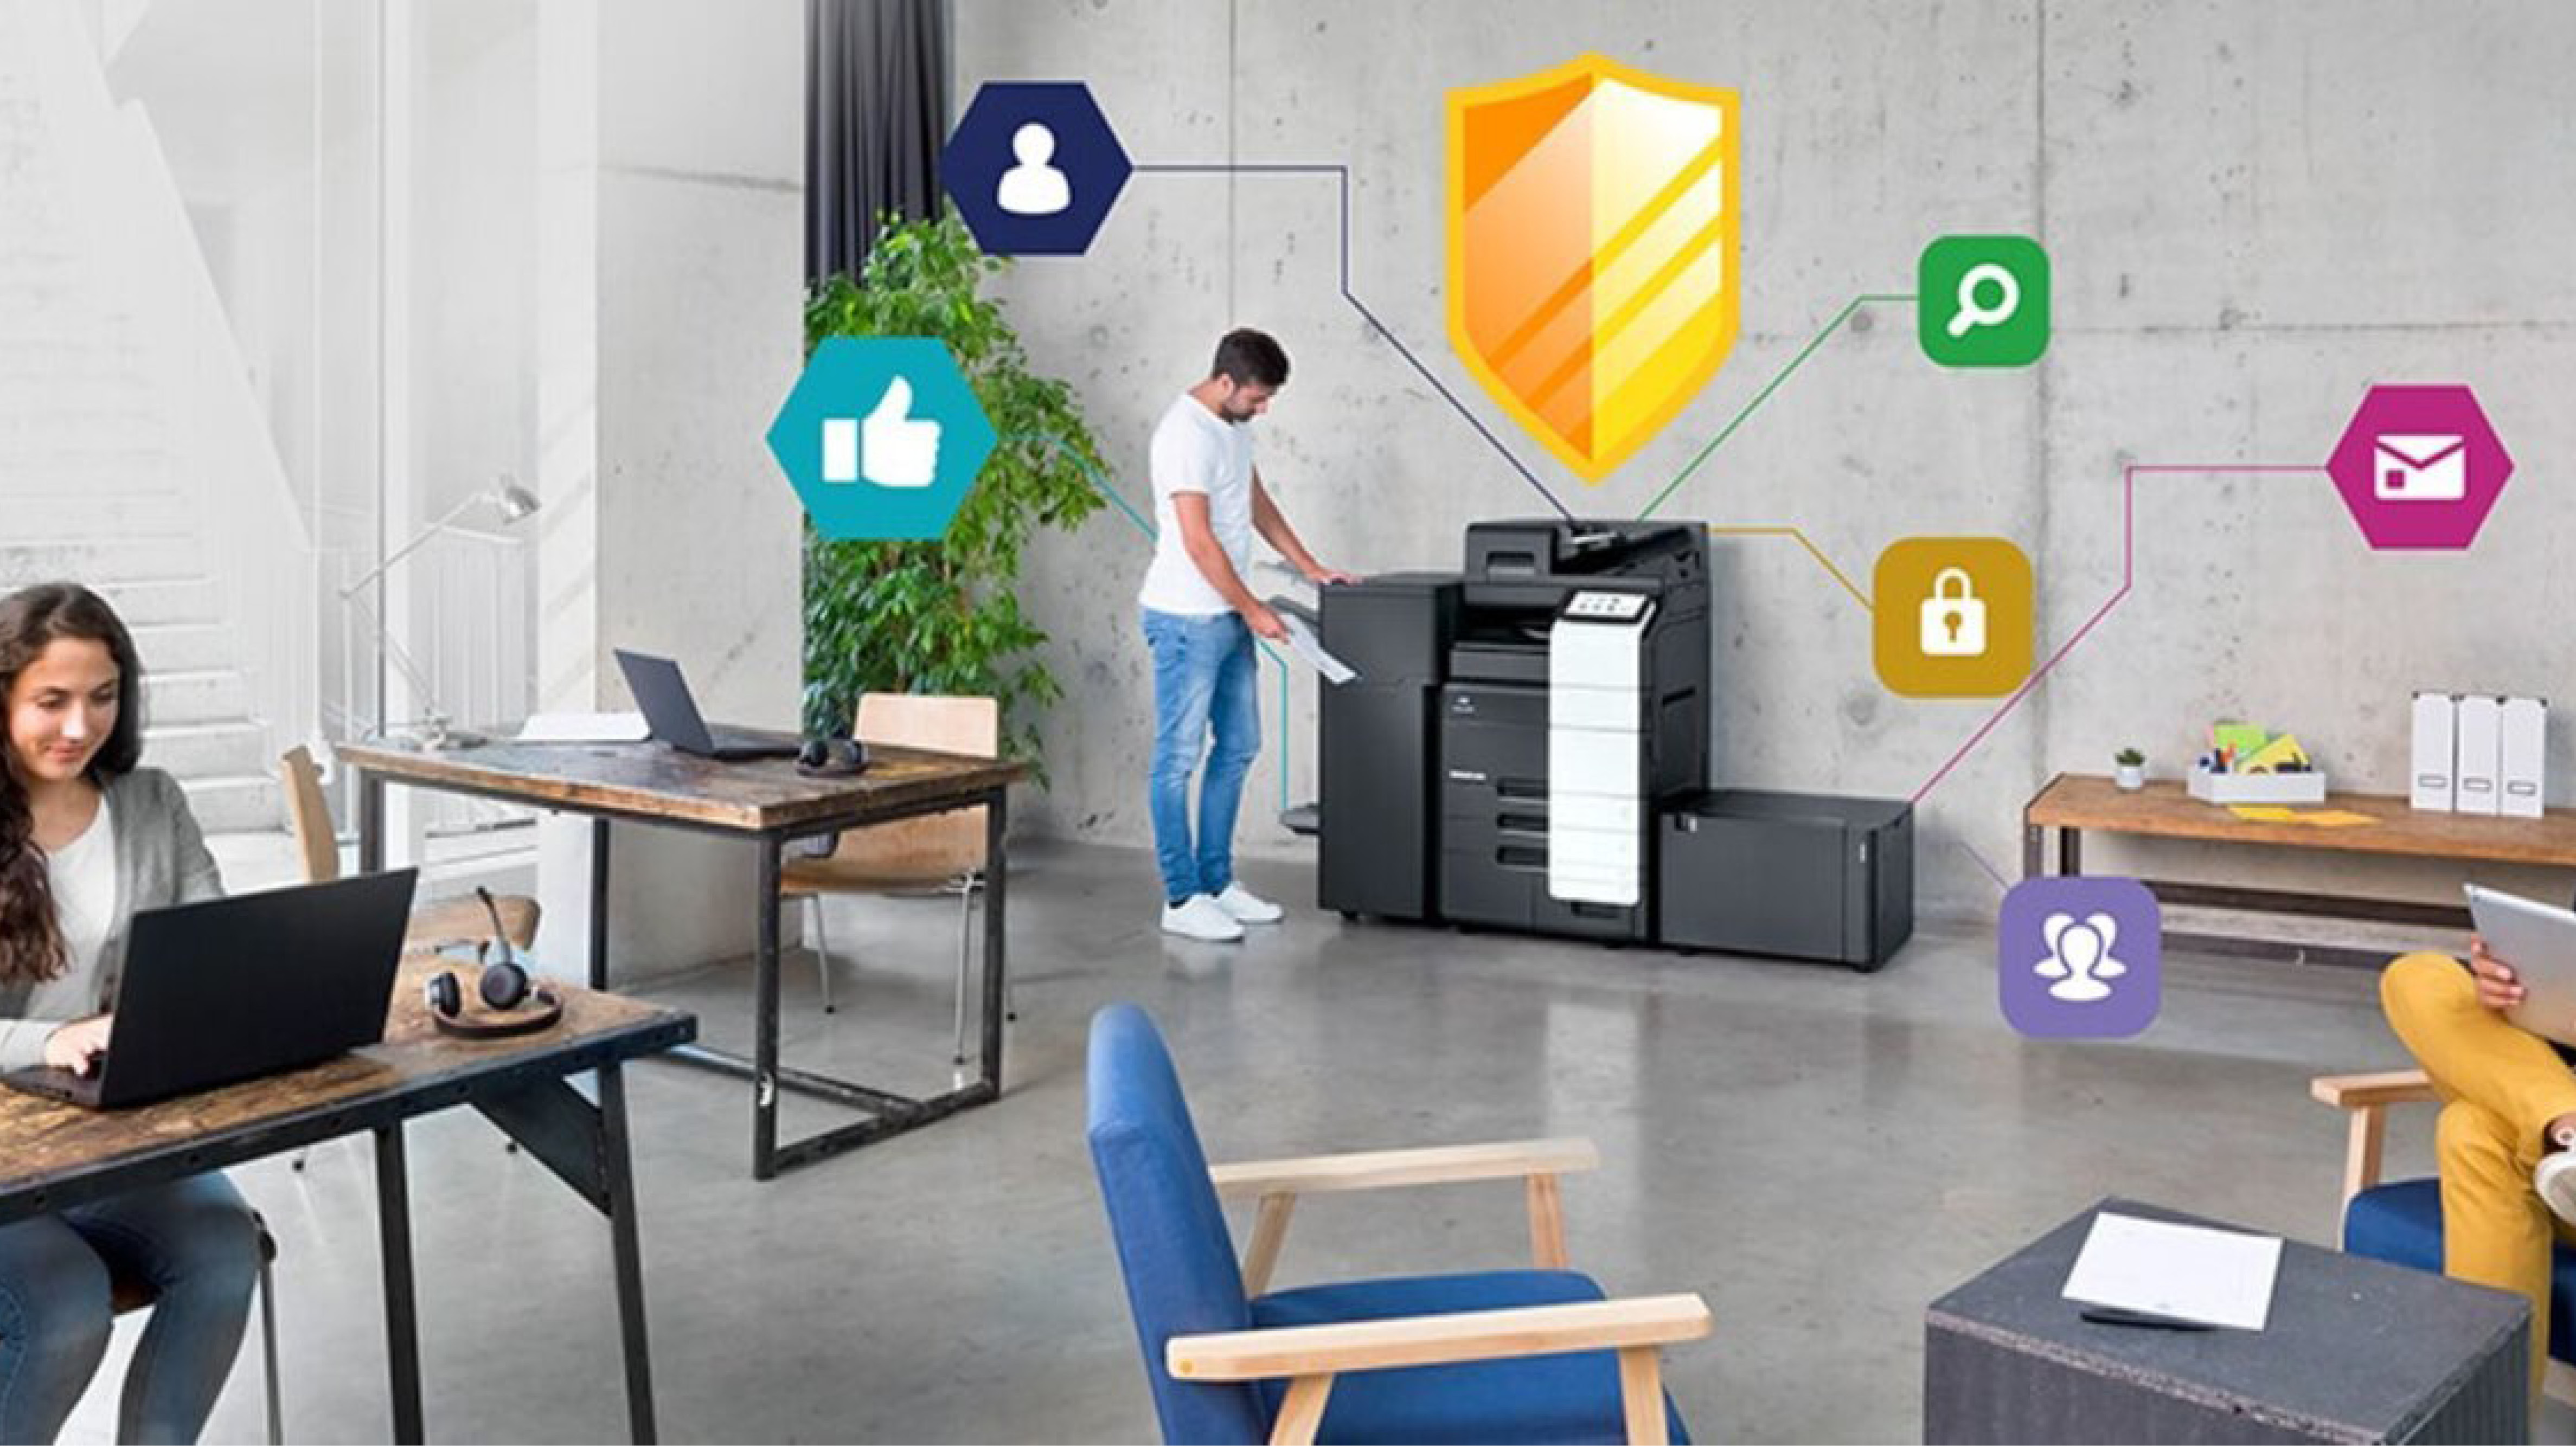 Las impresoras multifunción de Konica Minolta superan los estándares de seguridad